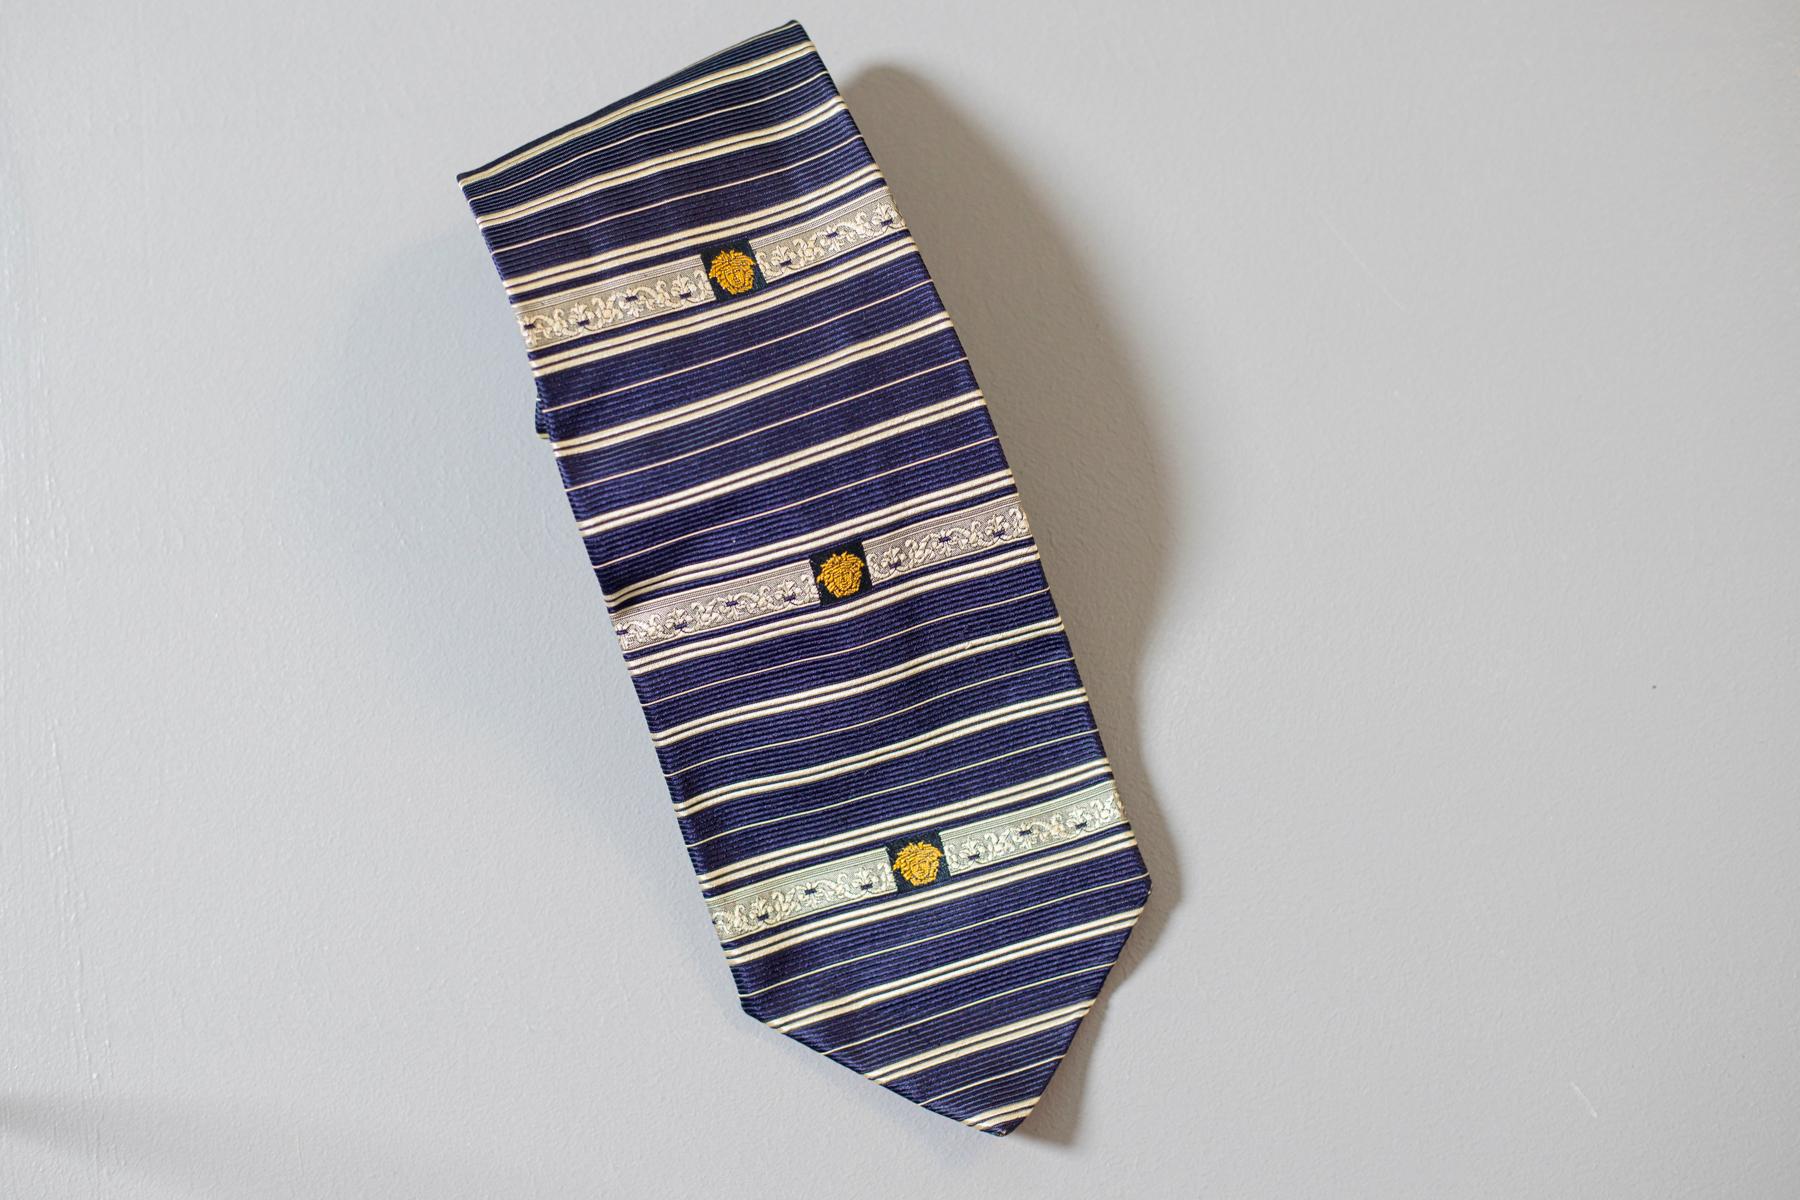 Cette cravate vintage conçue par Gianni Versace est un classique. Cette élégante cravate tout en soie est décorée non seulement de rayures bleues et blanches, mais aussi du symbole principal de Versace : La tête dorée de Méduse. Cette pièce de mode